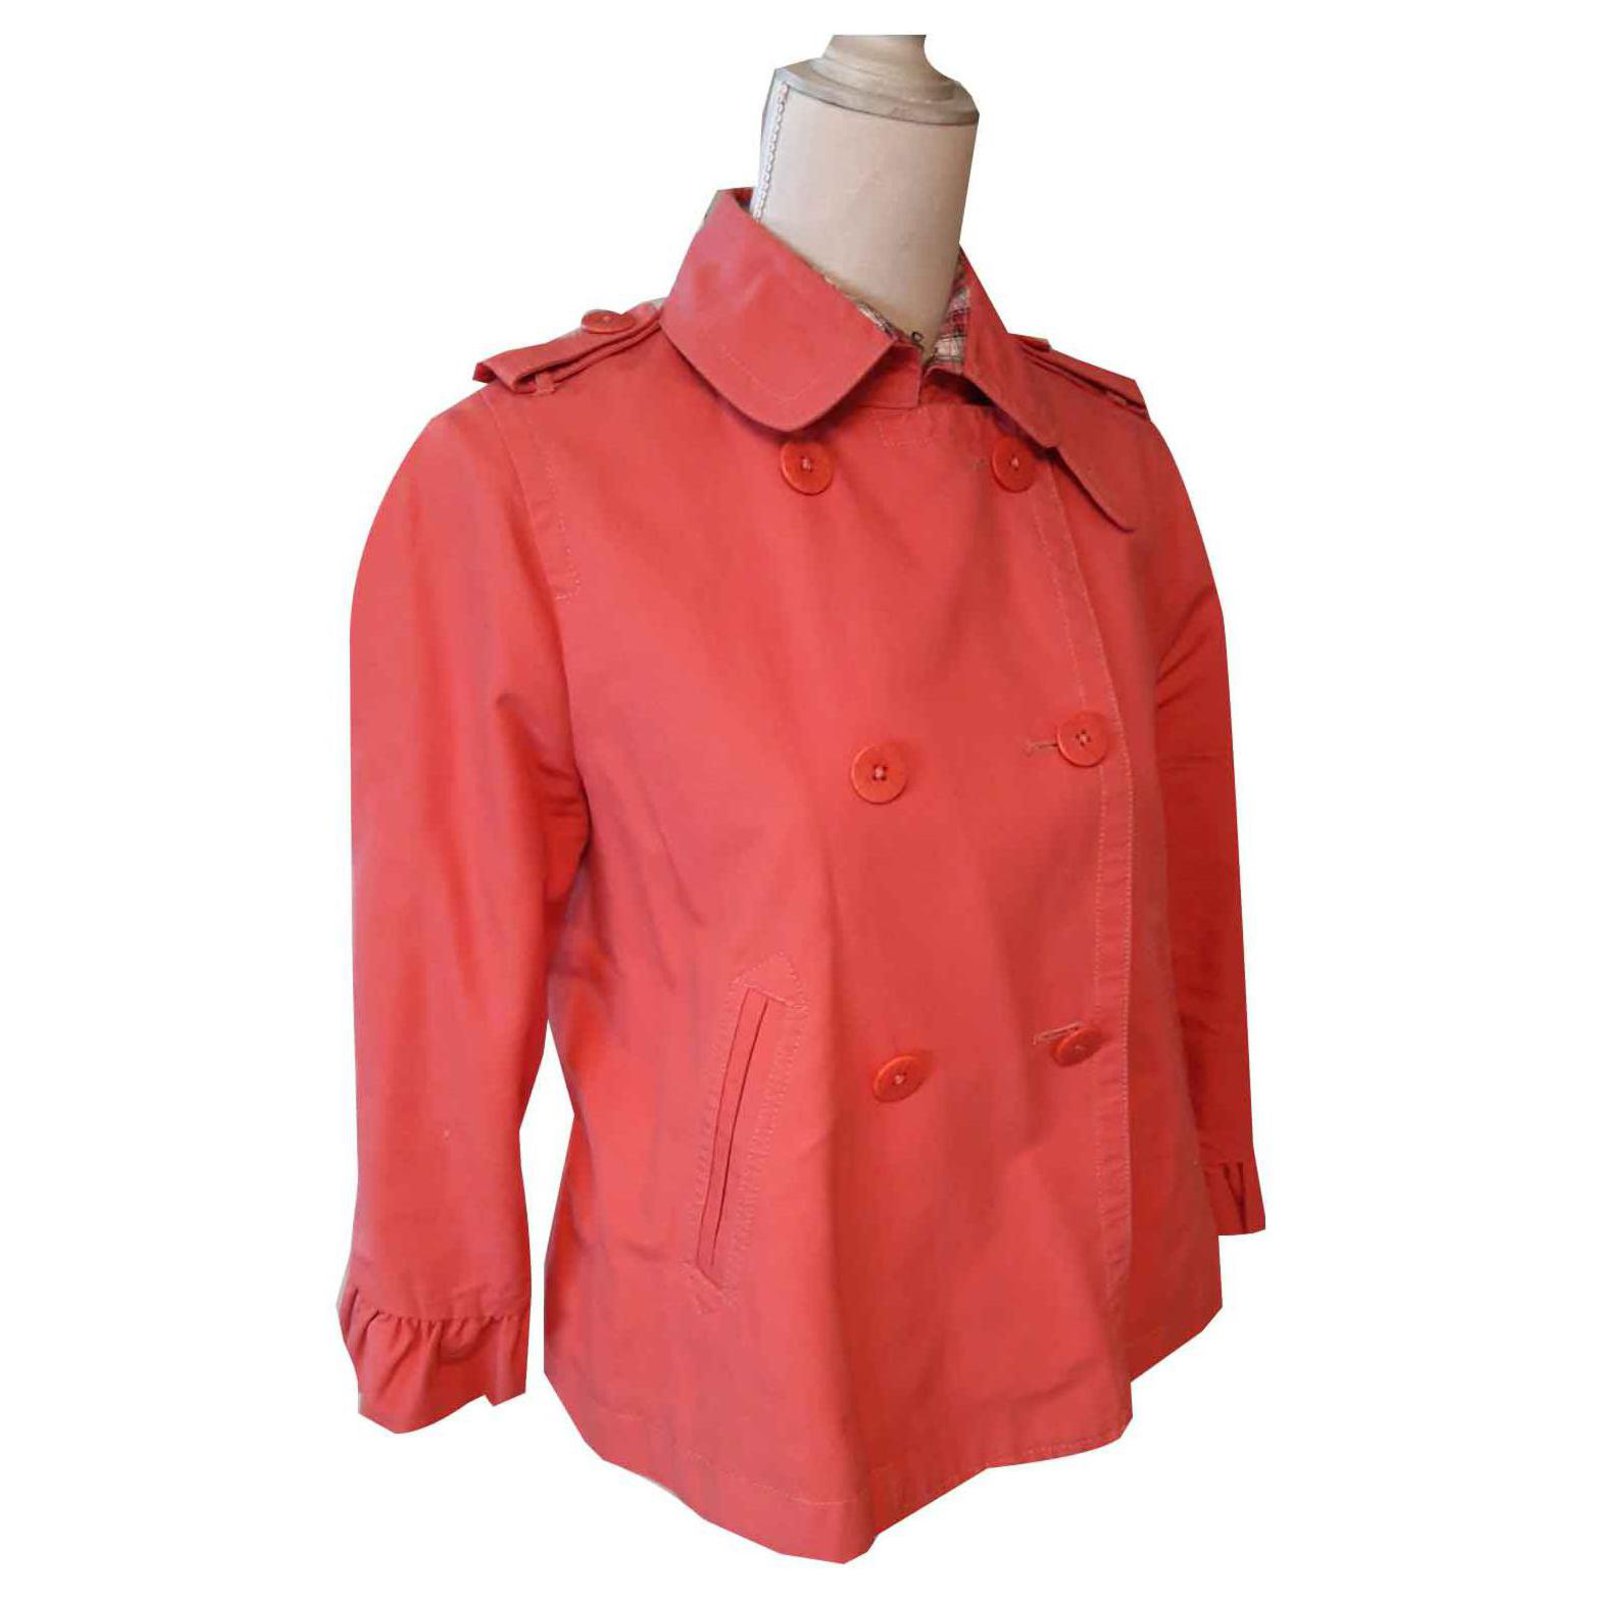 ralph lauren pink jacket